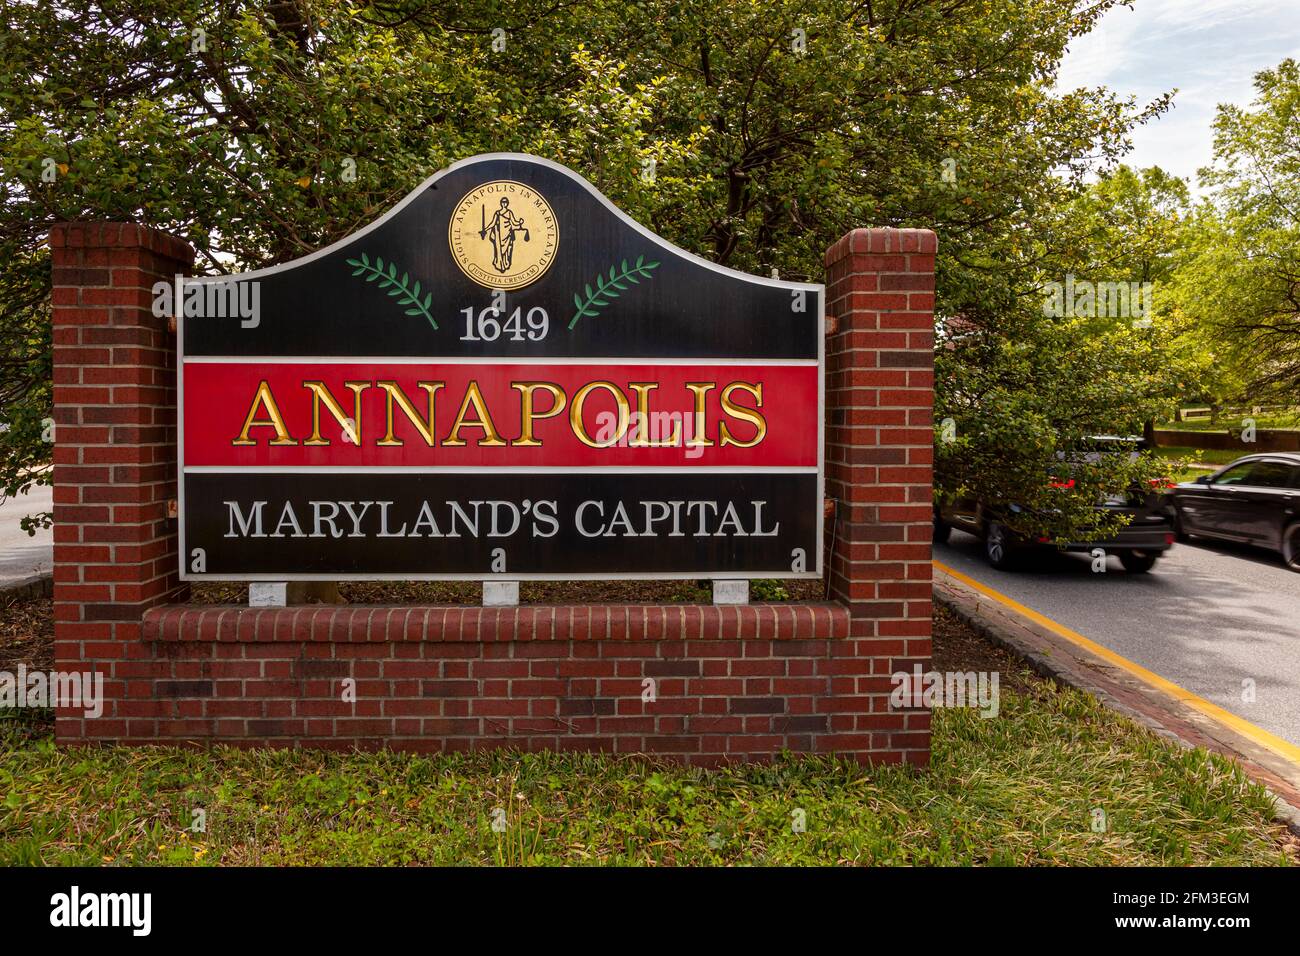 Cartello di benvenuto all'ingresso di Annapolis, Maryland, che ha lo stemma della città, la data di fondazione 1649 e il testo che recita Annapoli Foto Stock